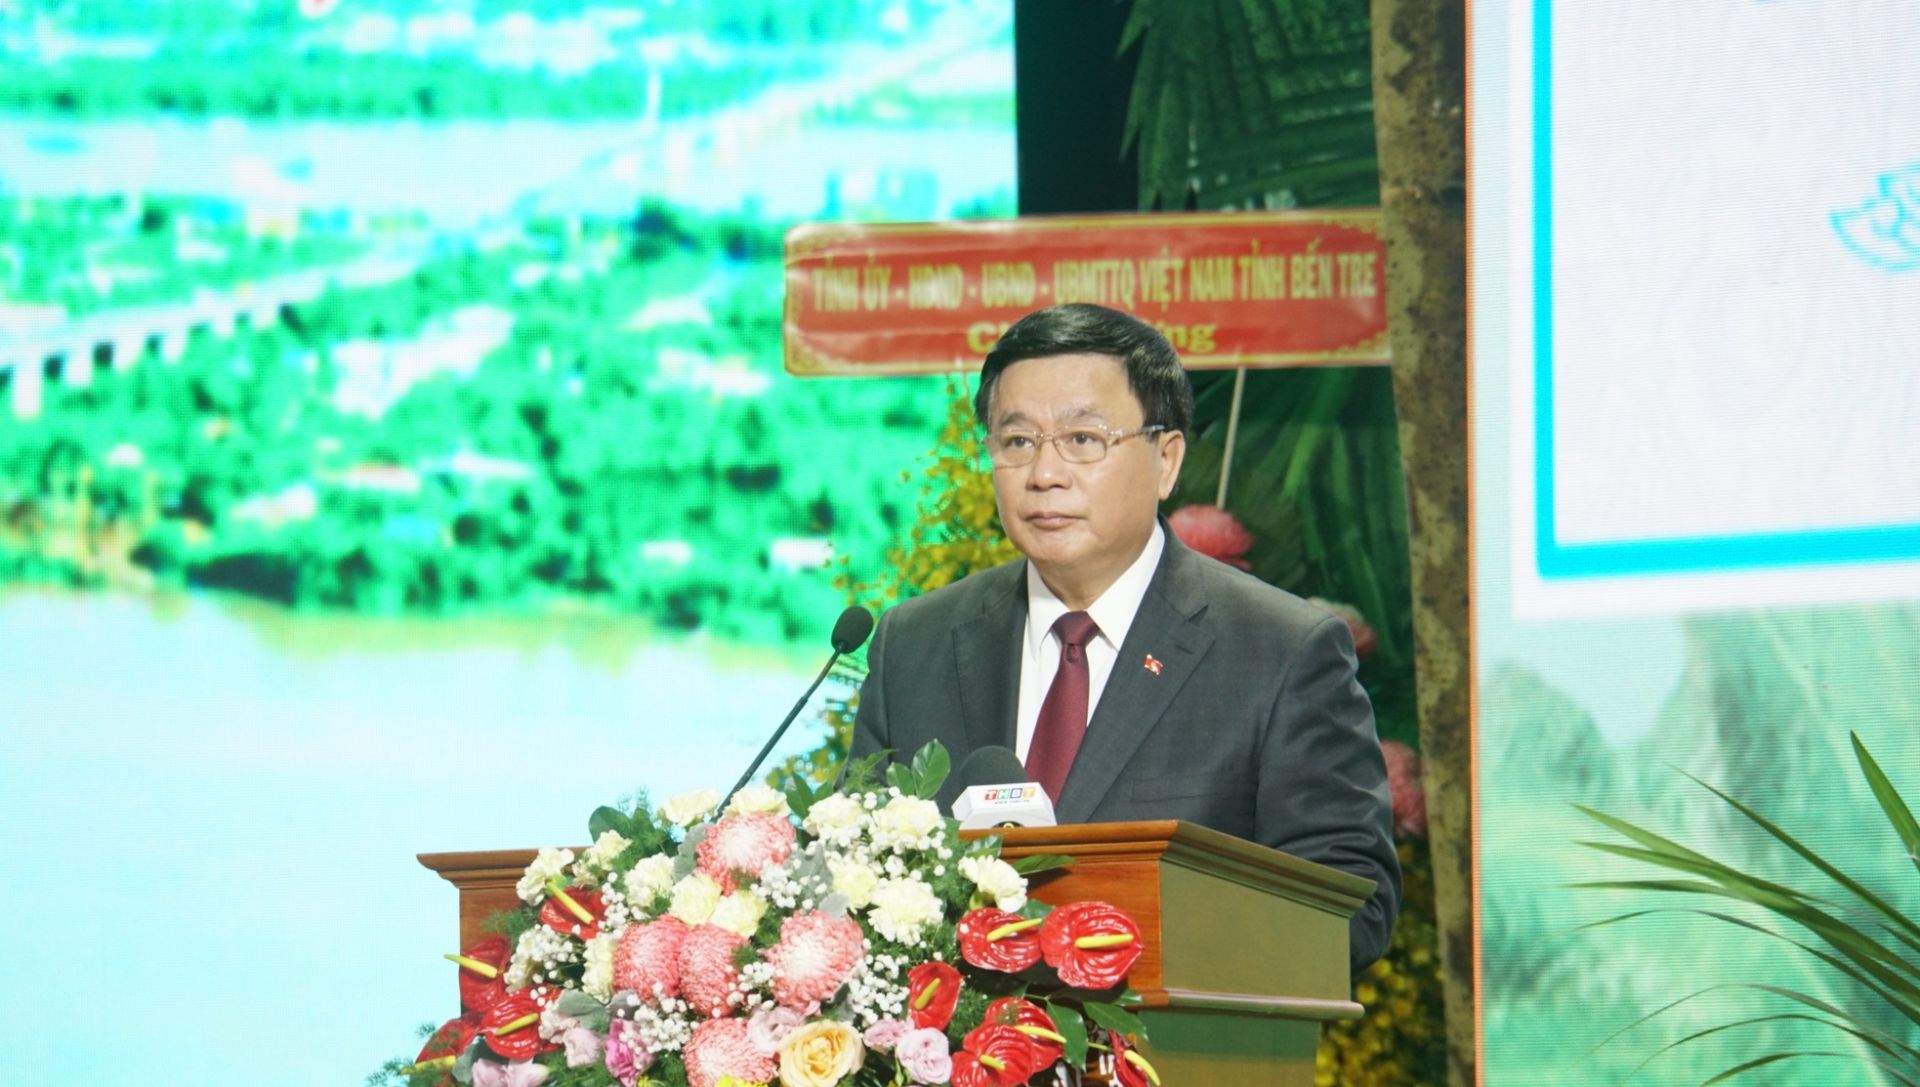 Giáo sư, Tiến sĩ Nguyễn Xuân Thắng, Ủy viên Bộ Chính trị, Giám đốc Học viện Chính trị quốc gia Hồ Chí Minh, Chủ tịch Hội đồng lý luận Trung ương phát biểu tại Hội thảo.